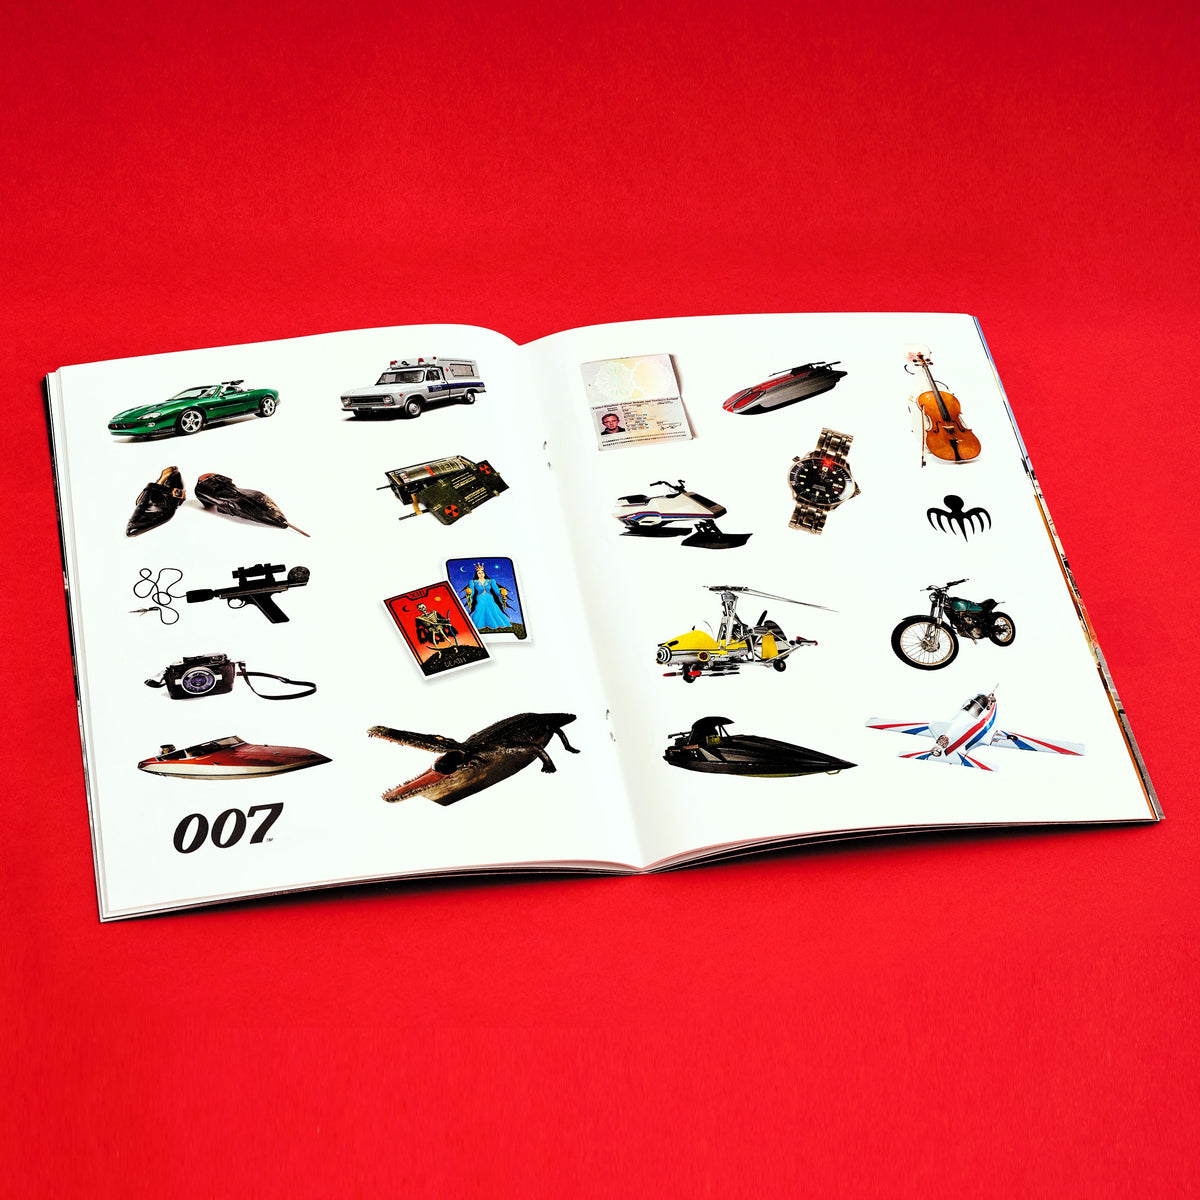 James Bond Fakten- und Stickerbuch - Gadgets &amp;amp; Fahrzeuge Edition